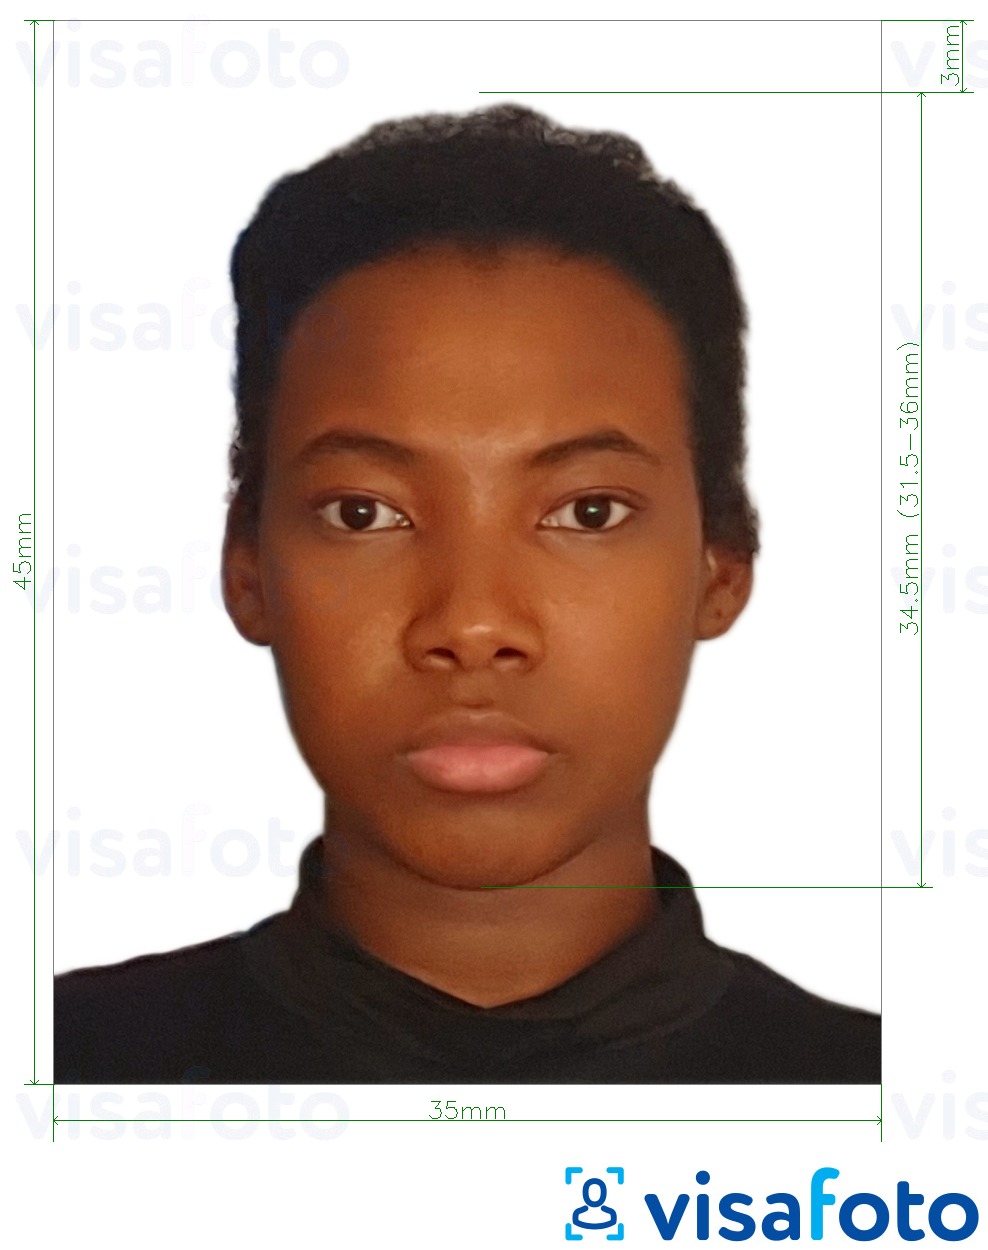 Voorbeeld van foto voor Namibië visum van Europa 35x45mm (3,5x4,5 cm) met exacte maatspecificatie